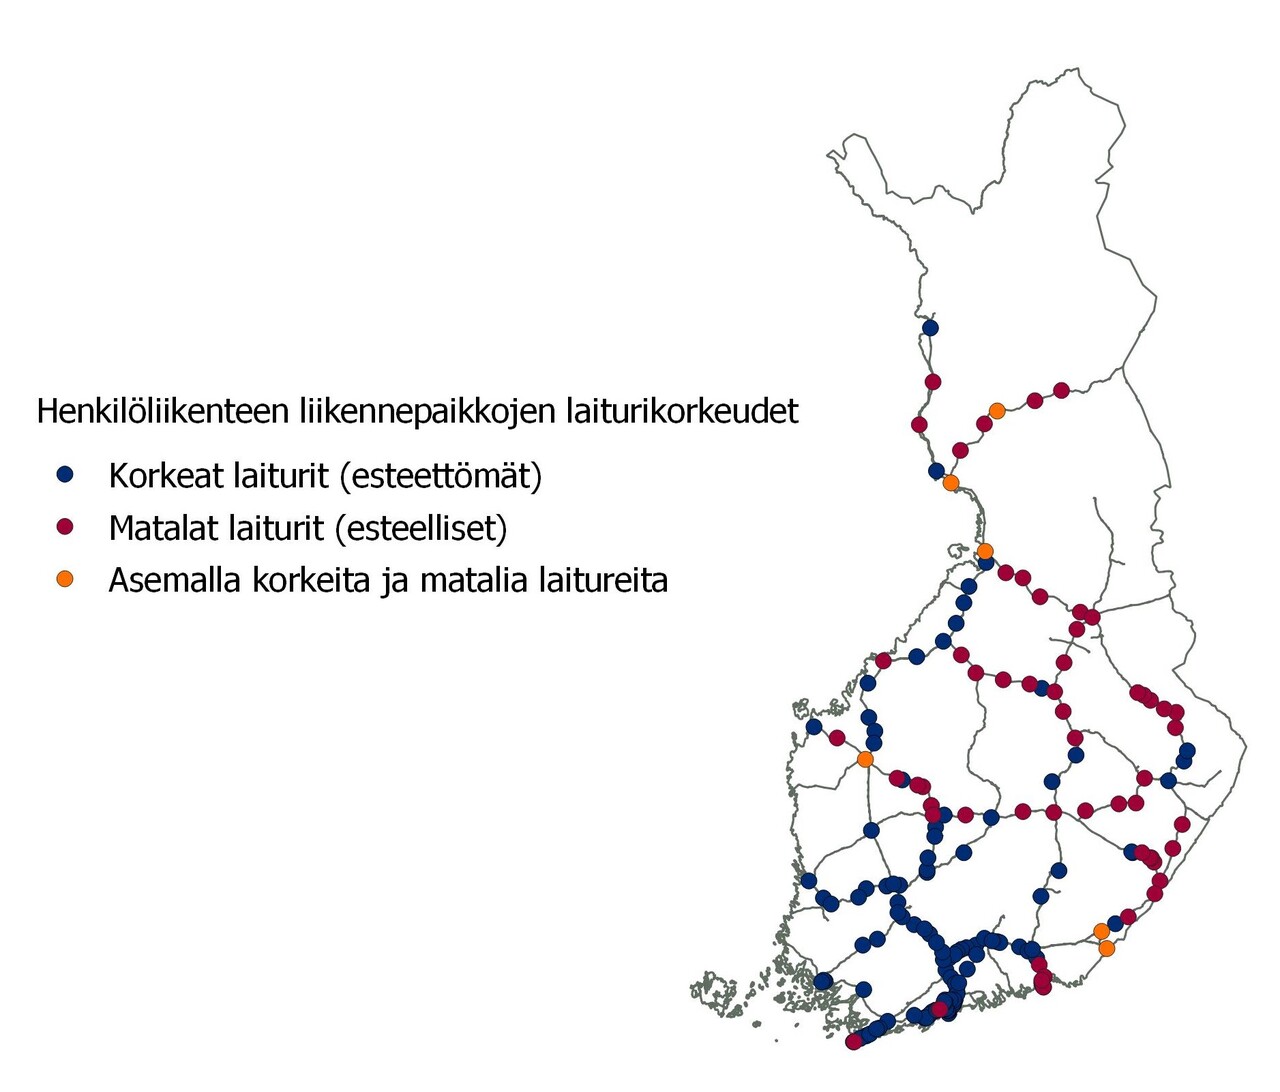 Henkilöliikenteen liikennepaikkojen laiturikorkeudet. Esteellisiä eli matalia laitureita vielä etenkin poikittaista liikennettä tukevilla radoilla ja Pohjois- ja Itä-Suomen rataverkolla.